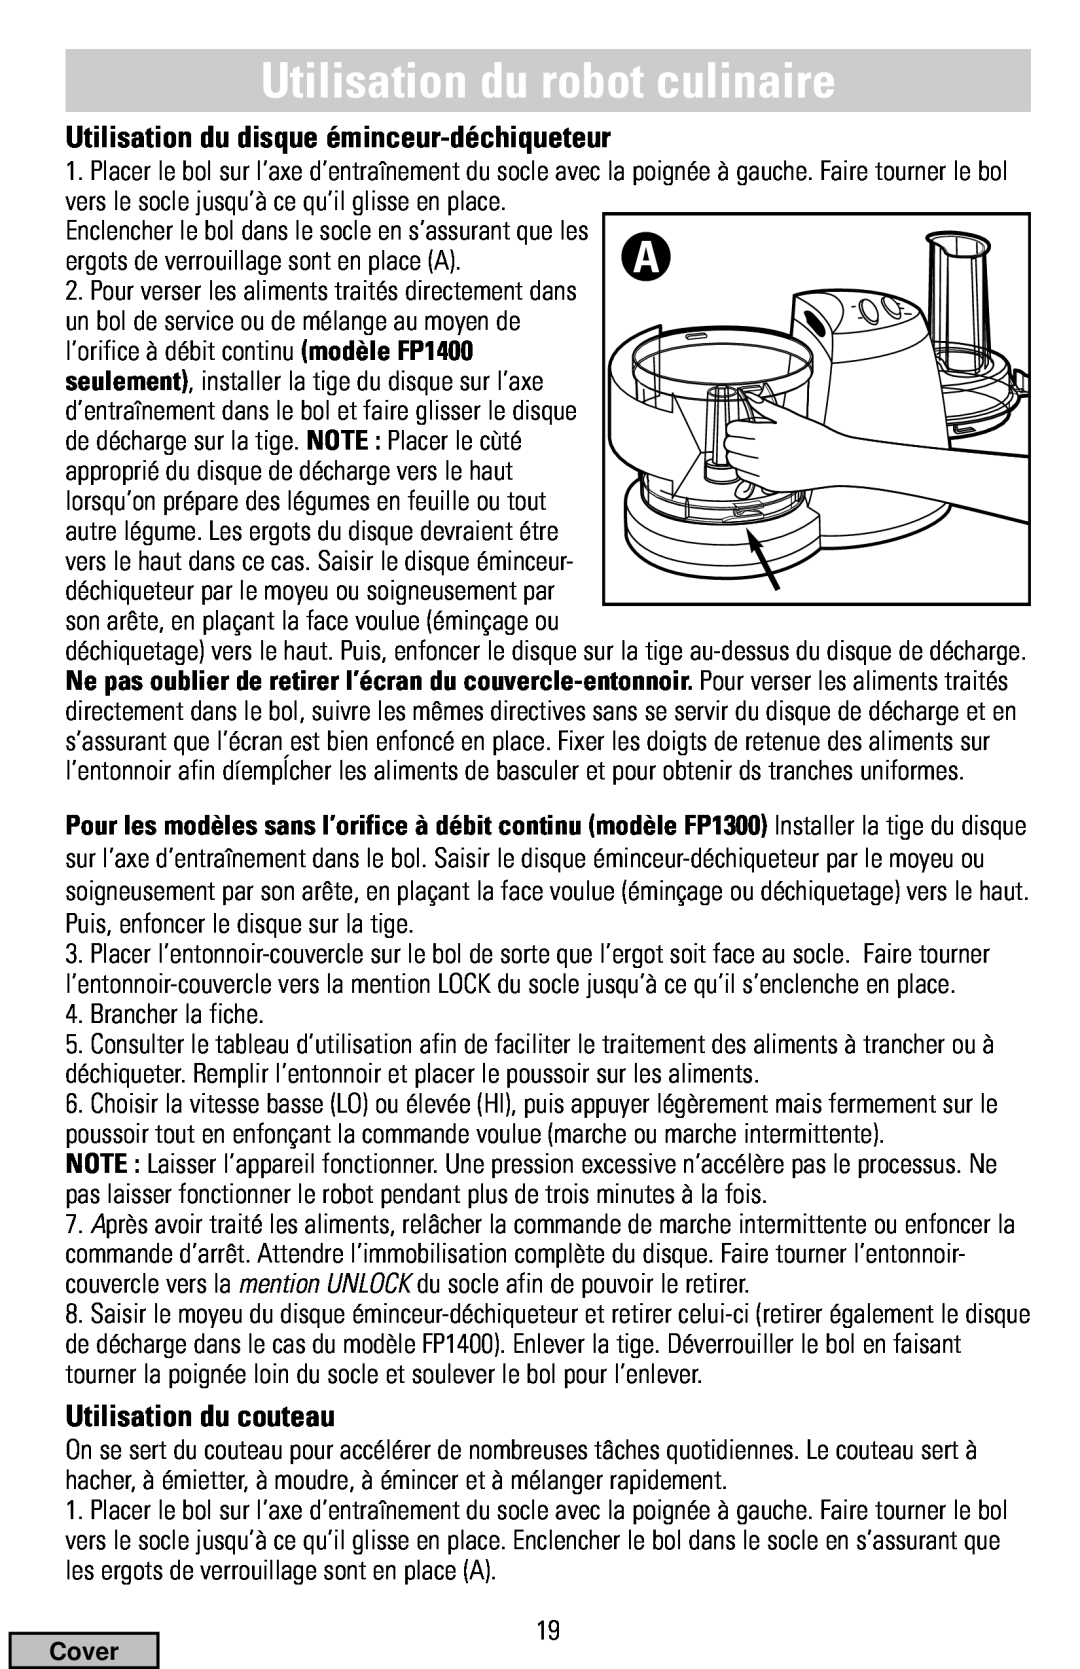 Black & Decker FP1300 Series manual Utilisation du robot culinaire, Utilisation du disque éminceur-déchiqueteur, Cover 